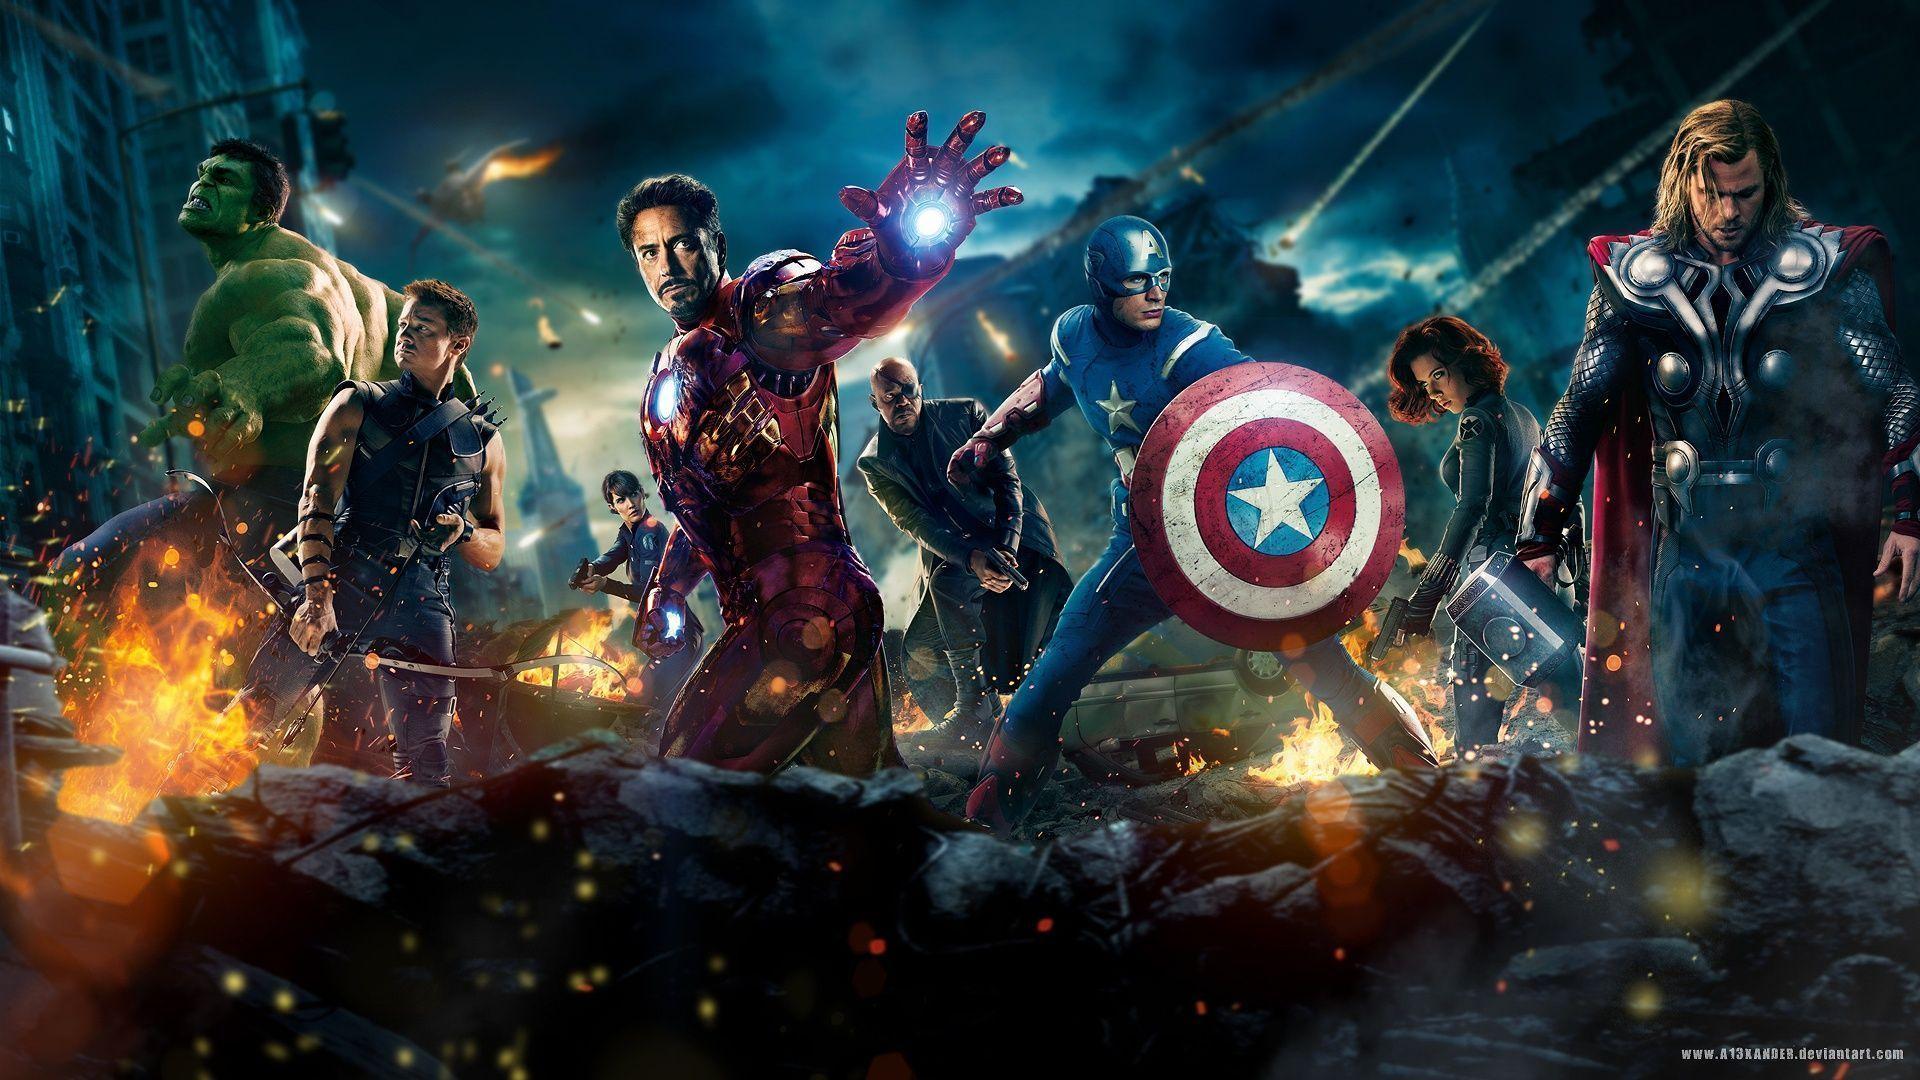 The Avengers Movie 2012 Wallpaper